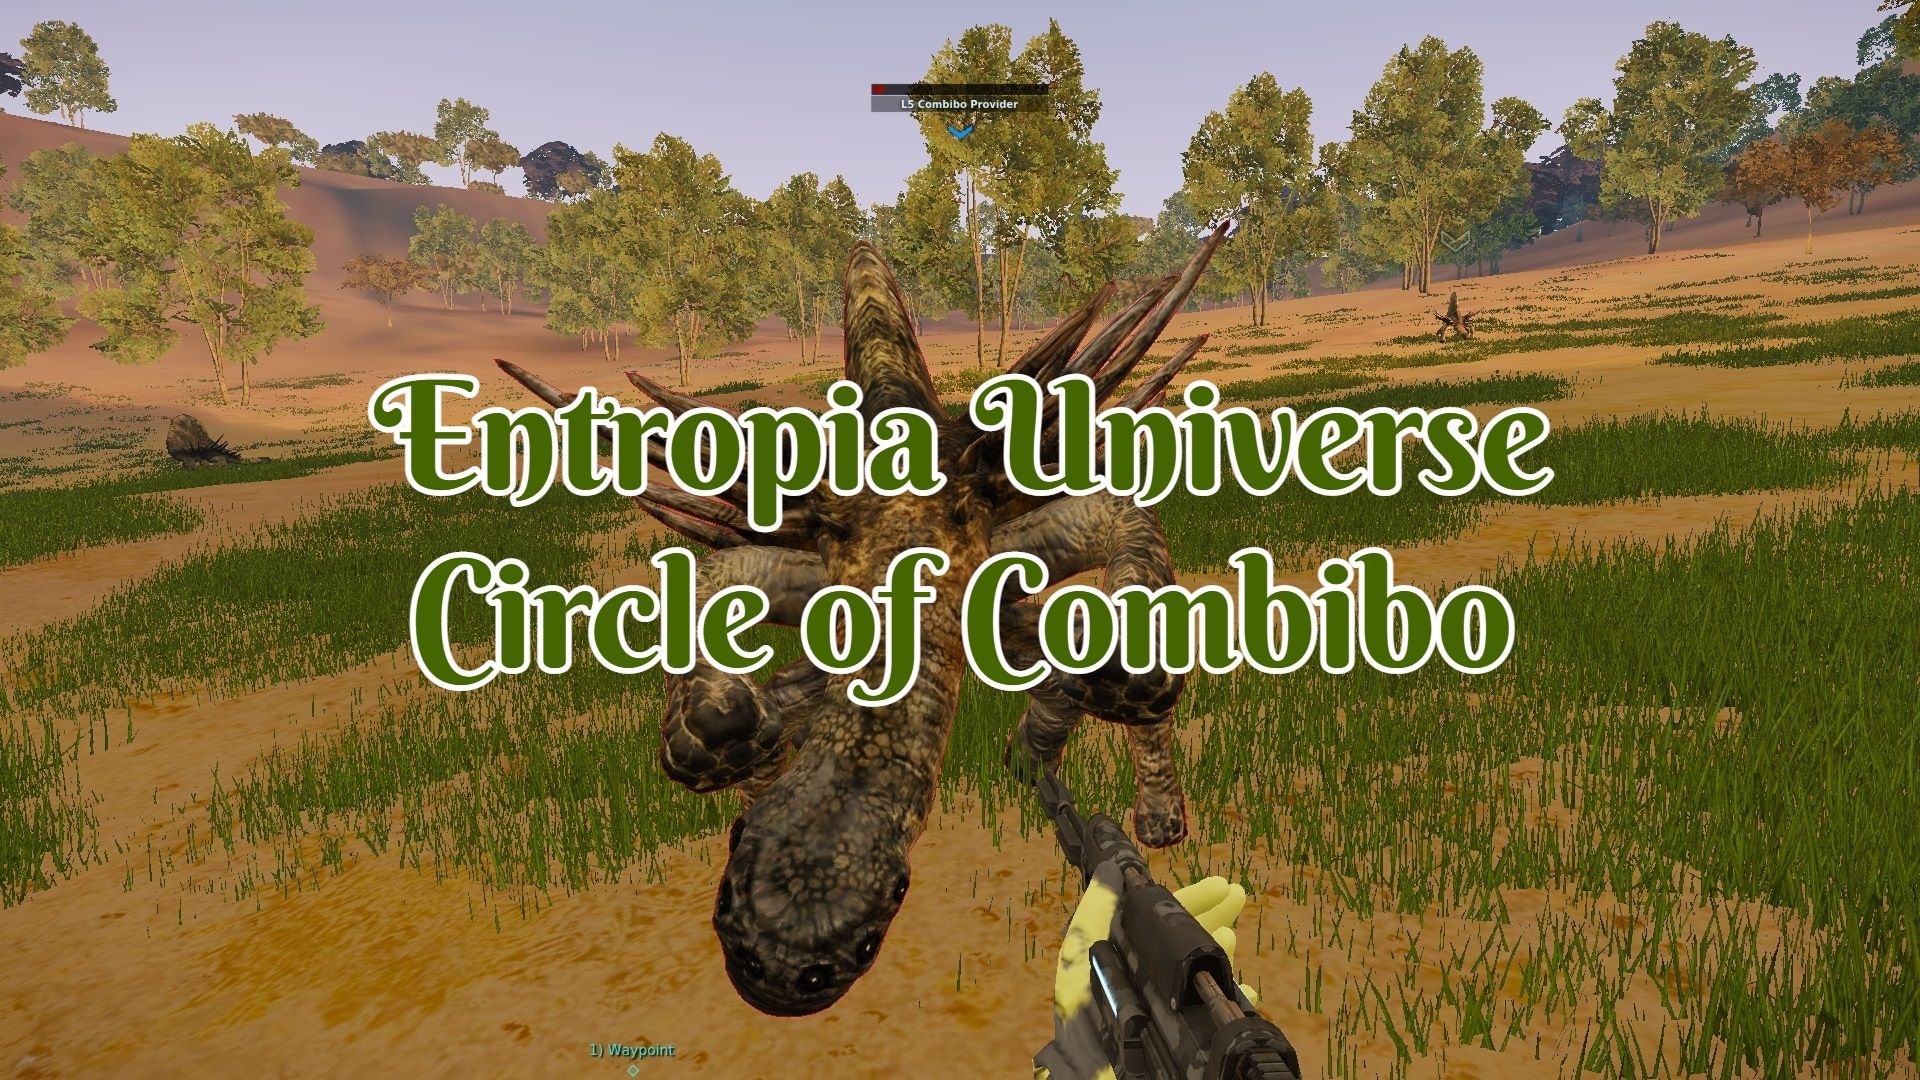 Circle of Combibo Entropia Universe.jpg